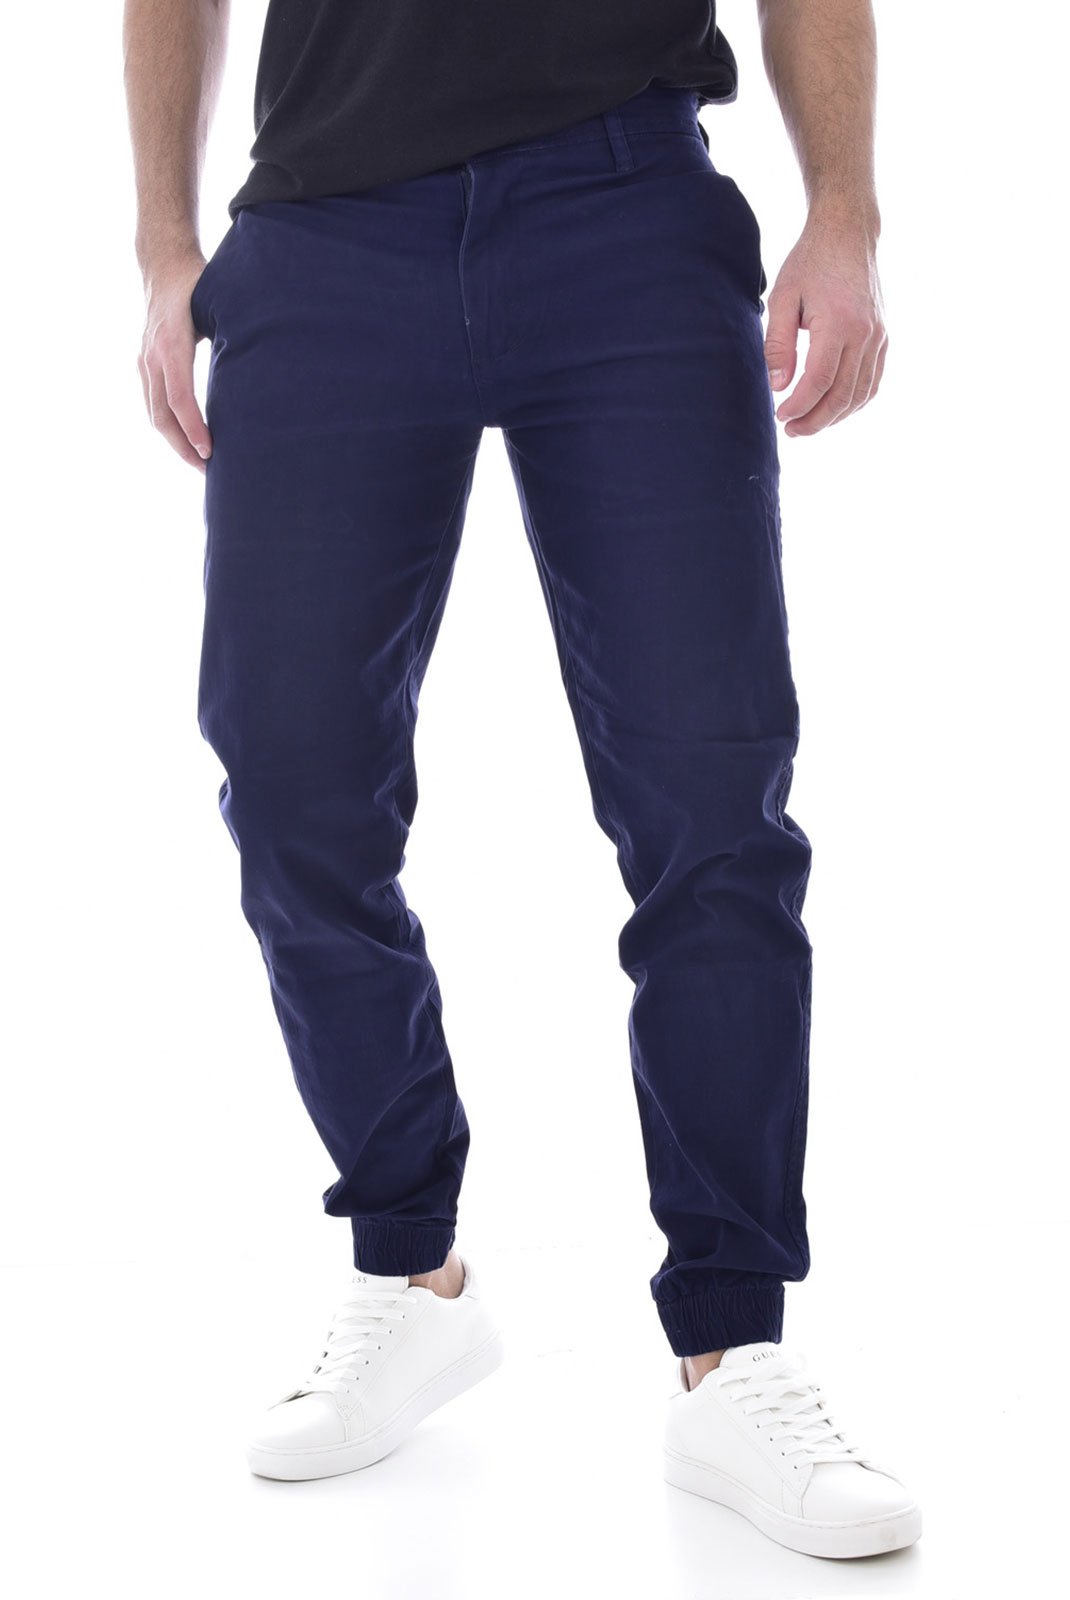 Pantalons sport/streetwear  Giani 5 D187 BLEU